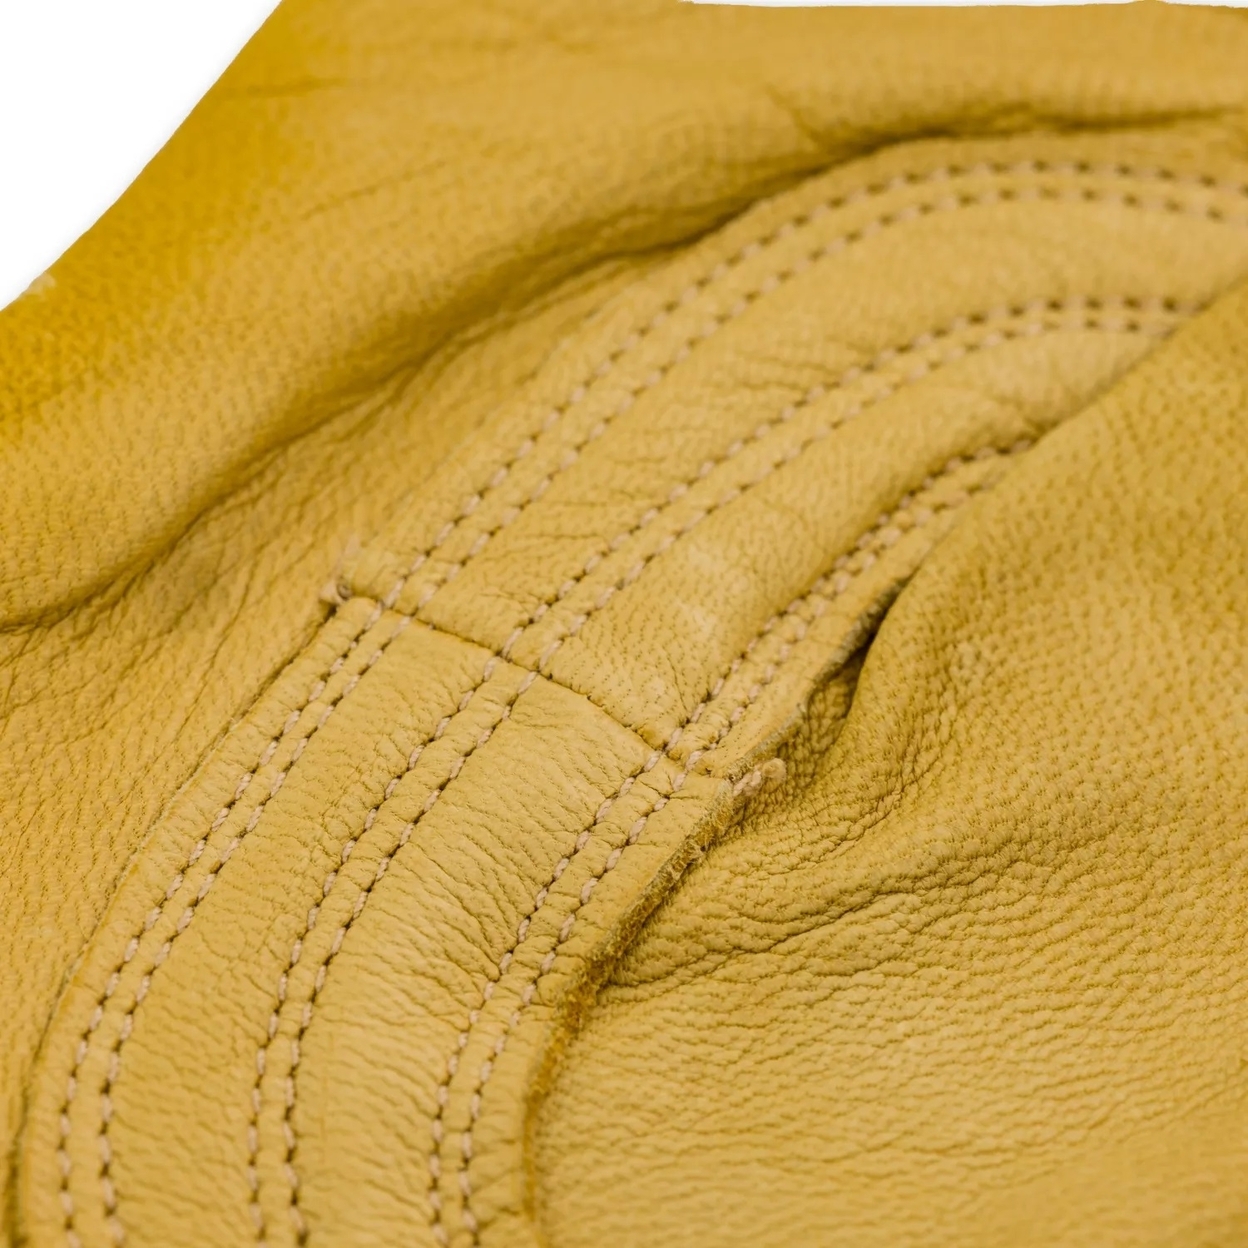 Plainsman Premium Cabretta Yellow Leather Gloves, 2 Pairs (Medium)